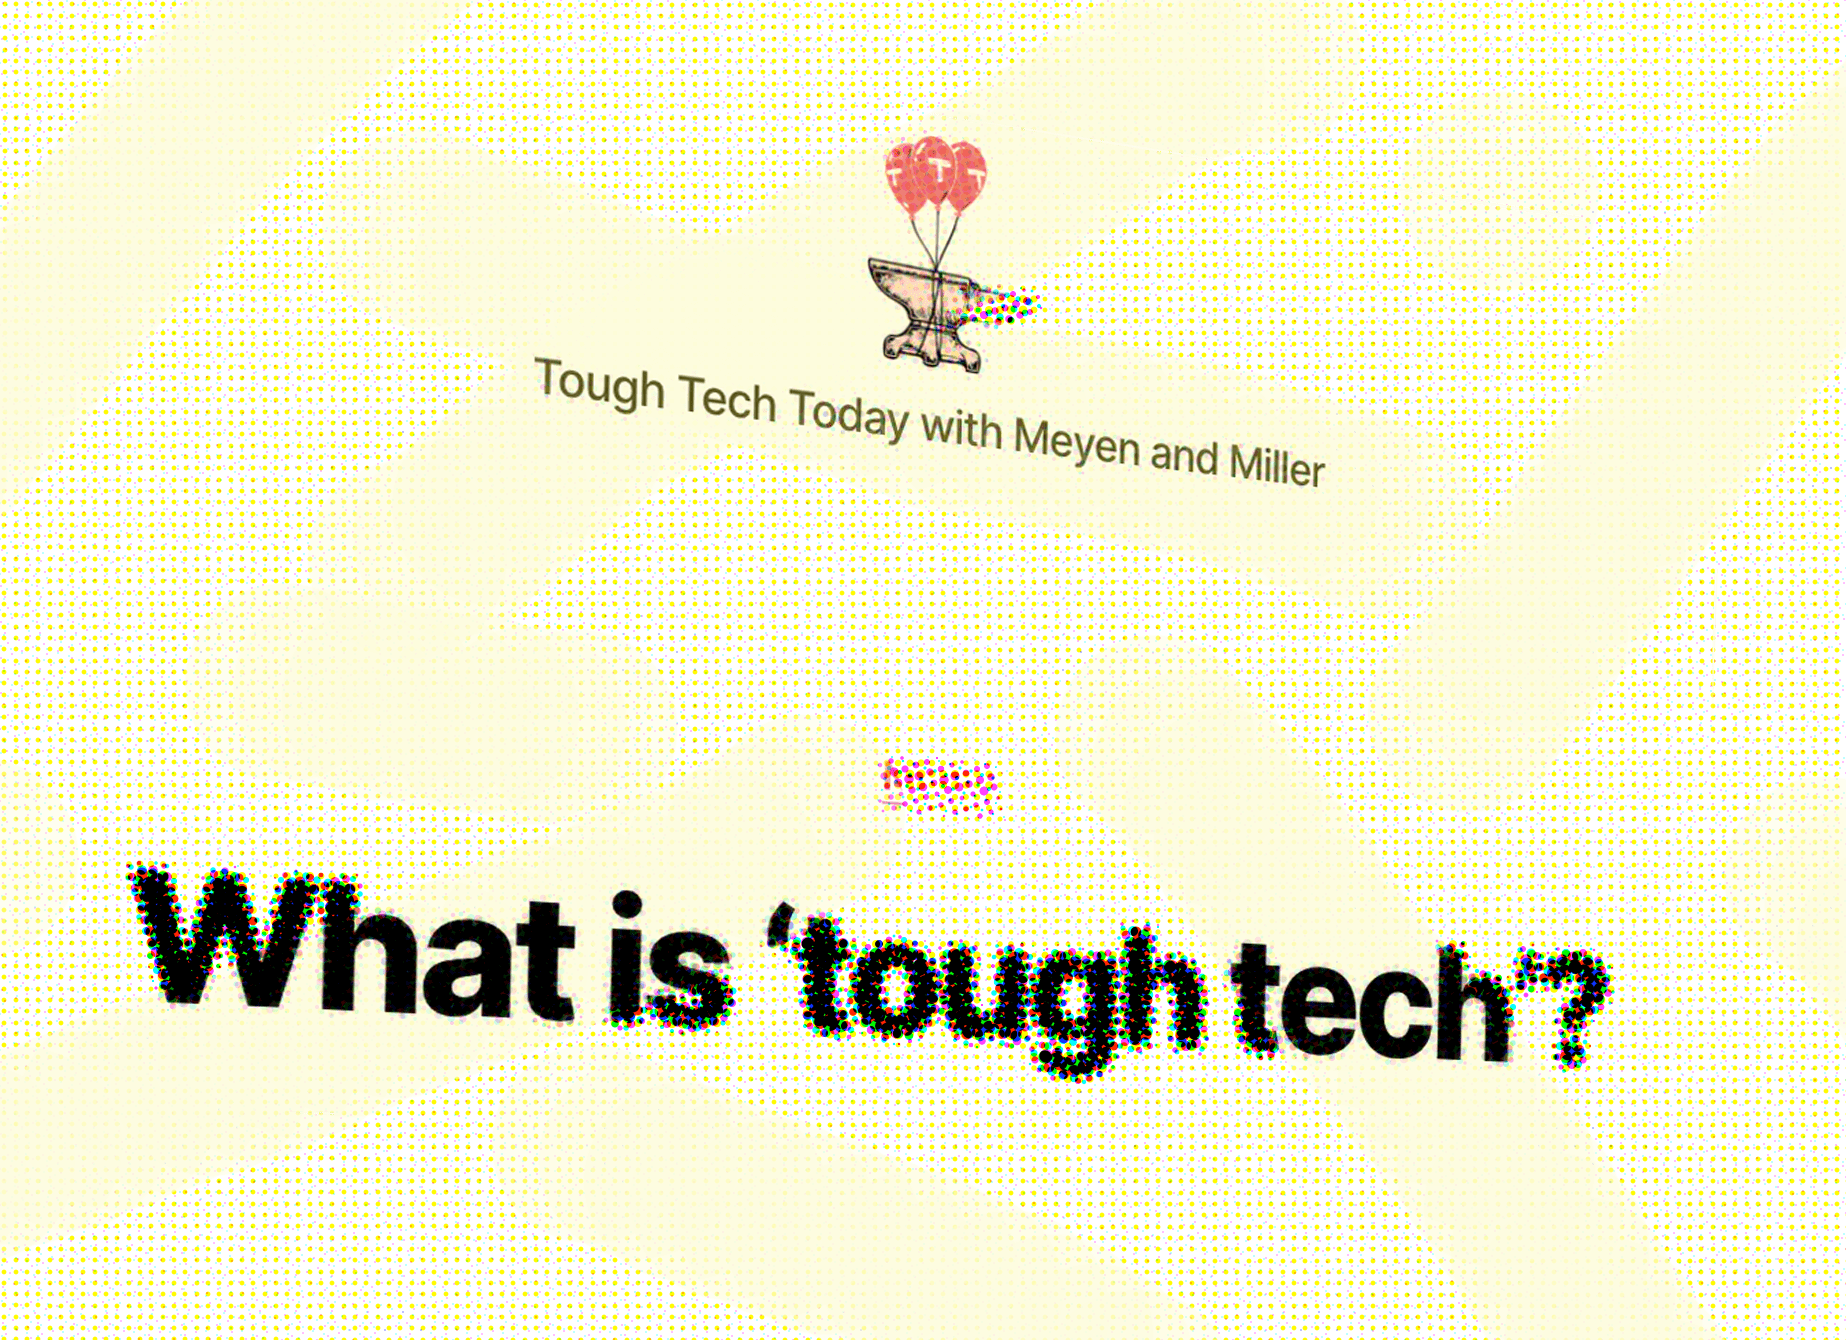 What is 'tough tech'?